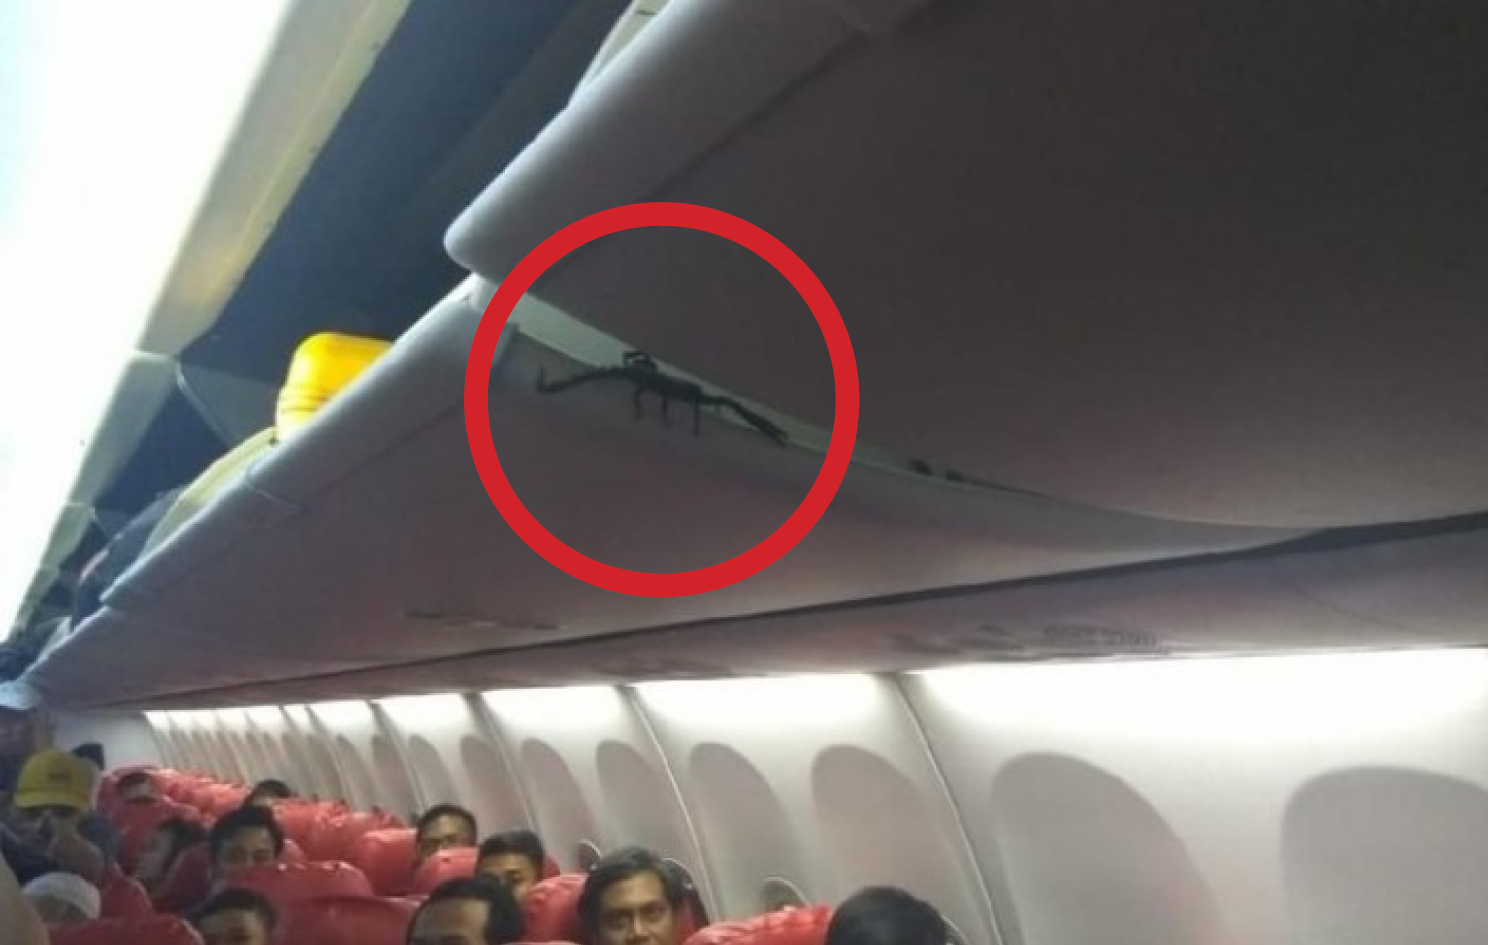 Penumpang pesawat melihat kalajengking di kabin bagasi saat pesawat mendarat di Bandara Soekarno Hatta.